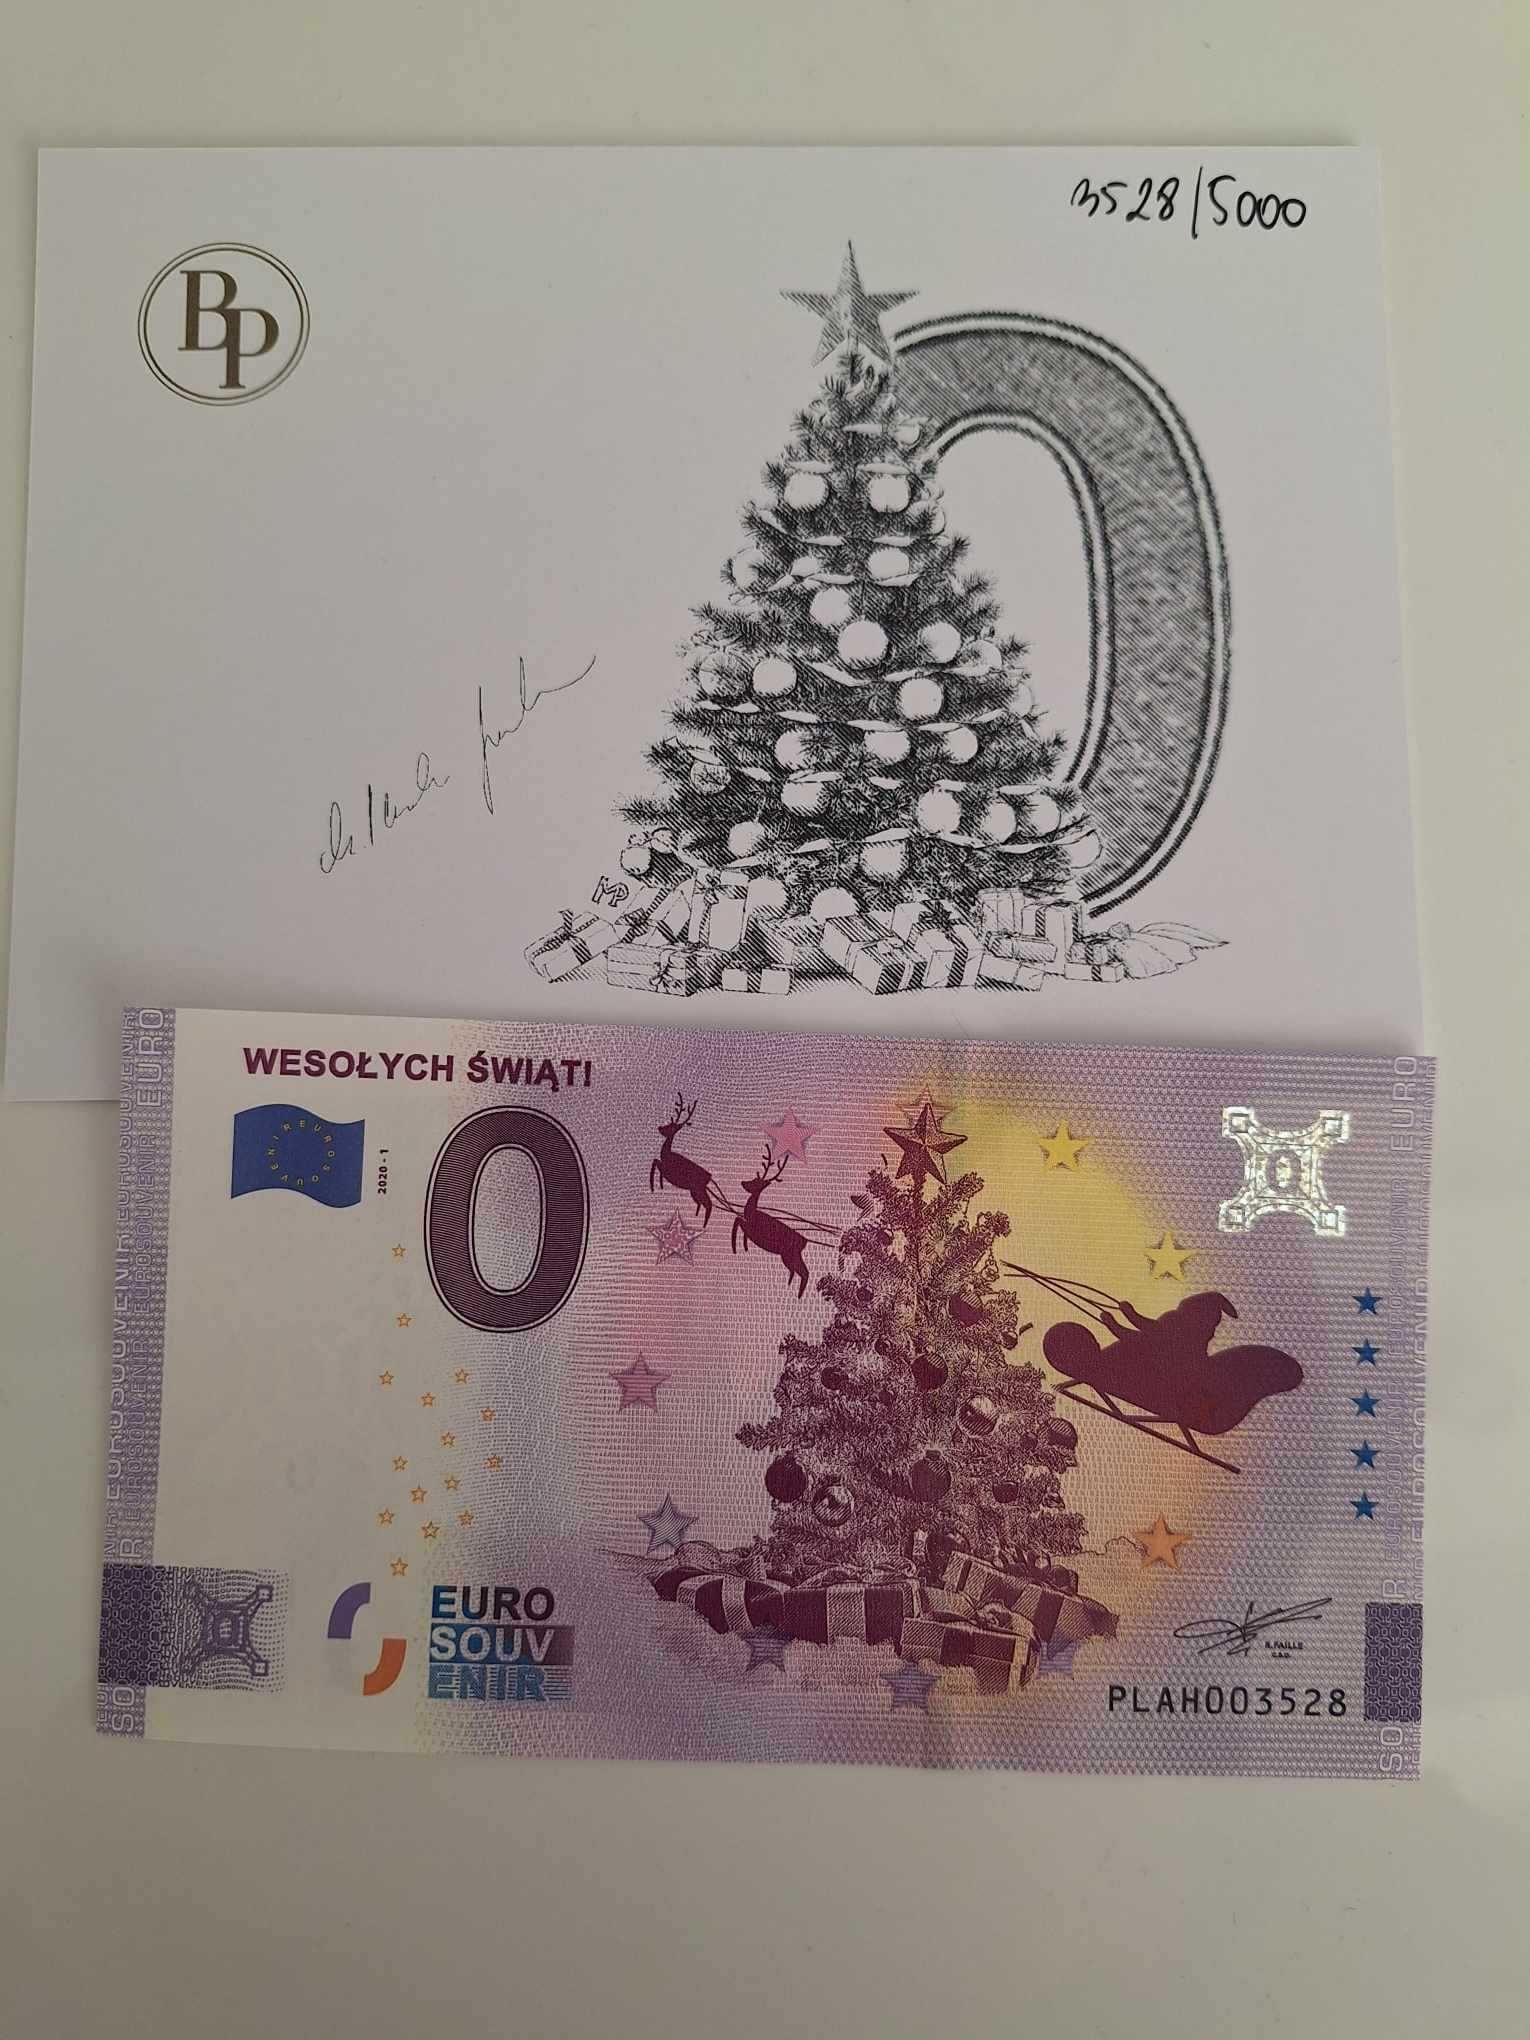 Banknot kolekcjonerski 0 euro Wesołych świąt